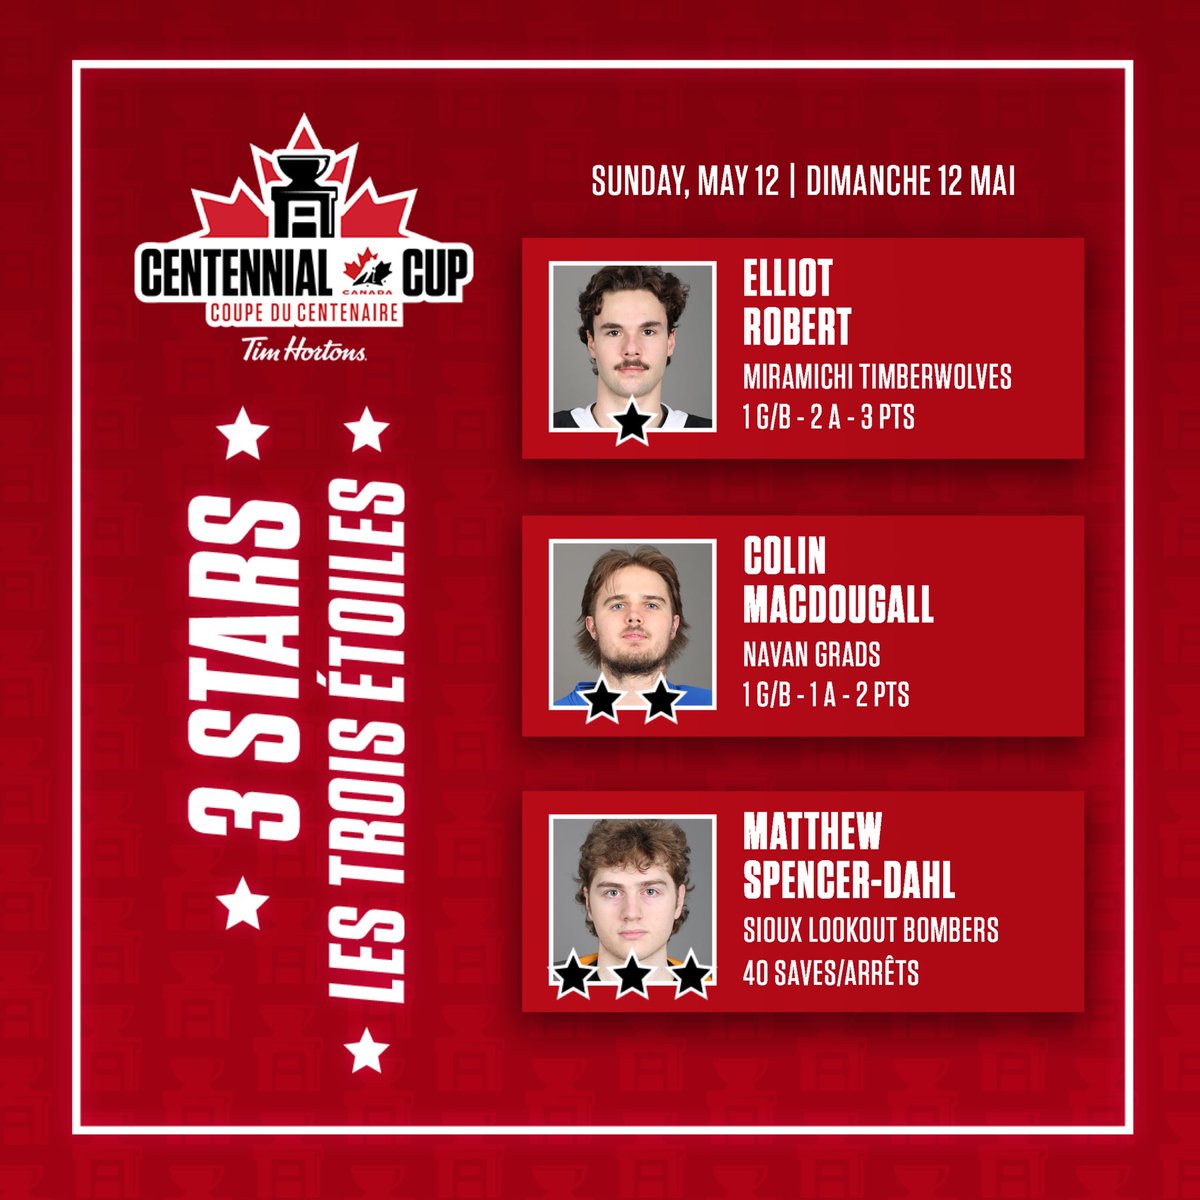 Your #CentennialCup 3 Stars for Sunday! ⭐️⭐️⭐️

Vos 3 étoiles du dimanche à la #CoupeDuCentenaire! ⭐️⭐️⭐️

@TimHortons | @cjhlhockey